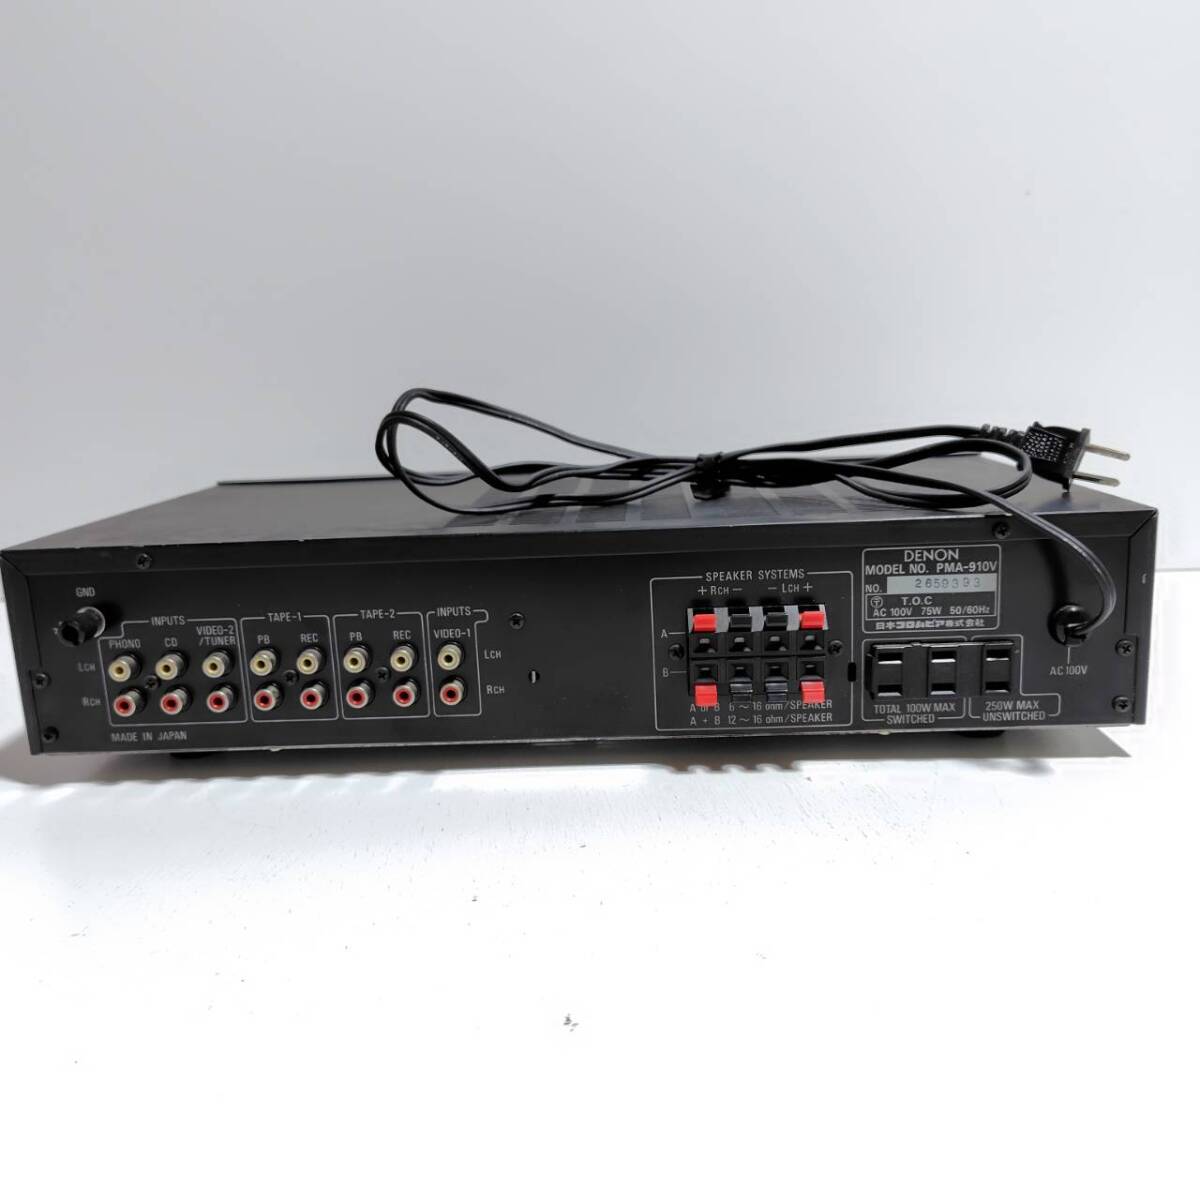 DENON Denon pre-main amplifier PMA-910V operation goods audio equipment 